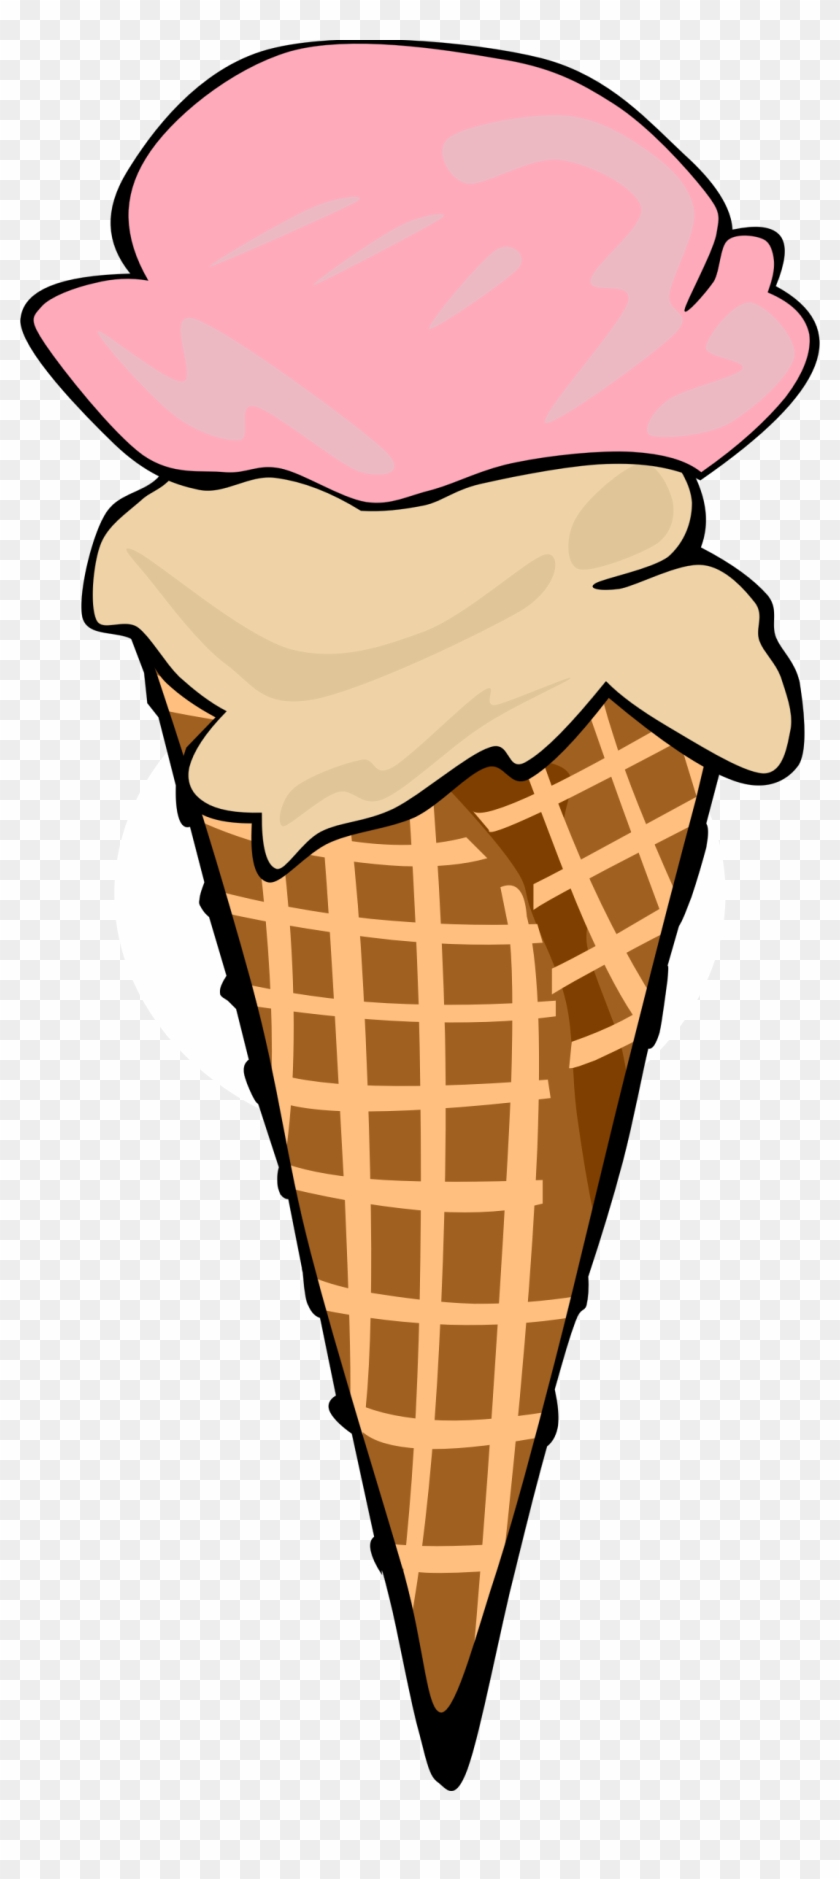 Food, Desserts, Ice Cream Cones, Waffle, - Ice Cream Cone Clip Art #202382